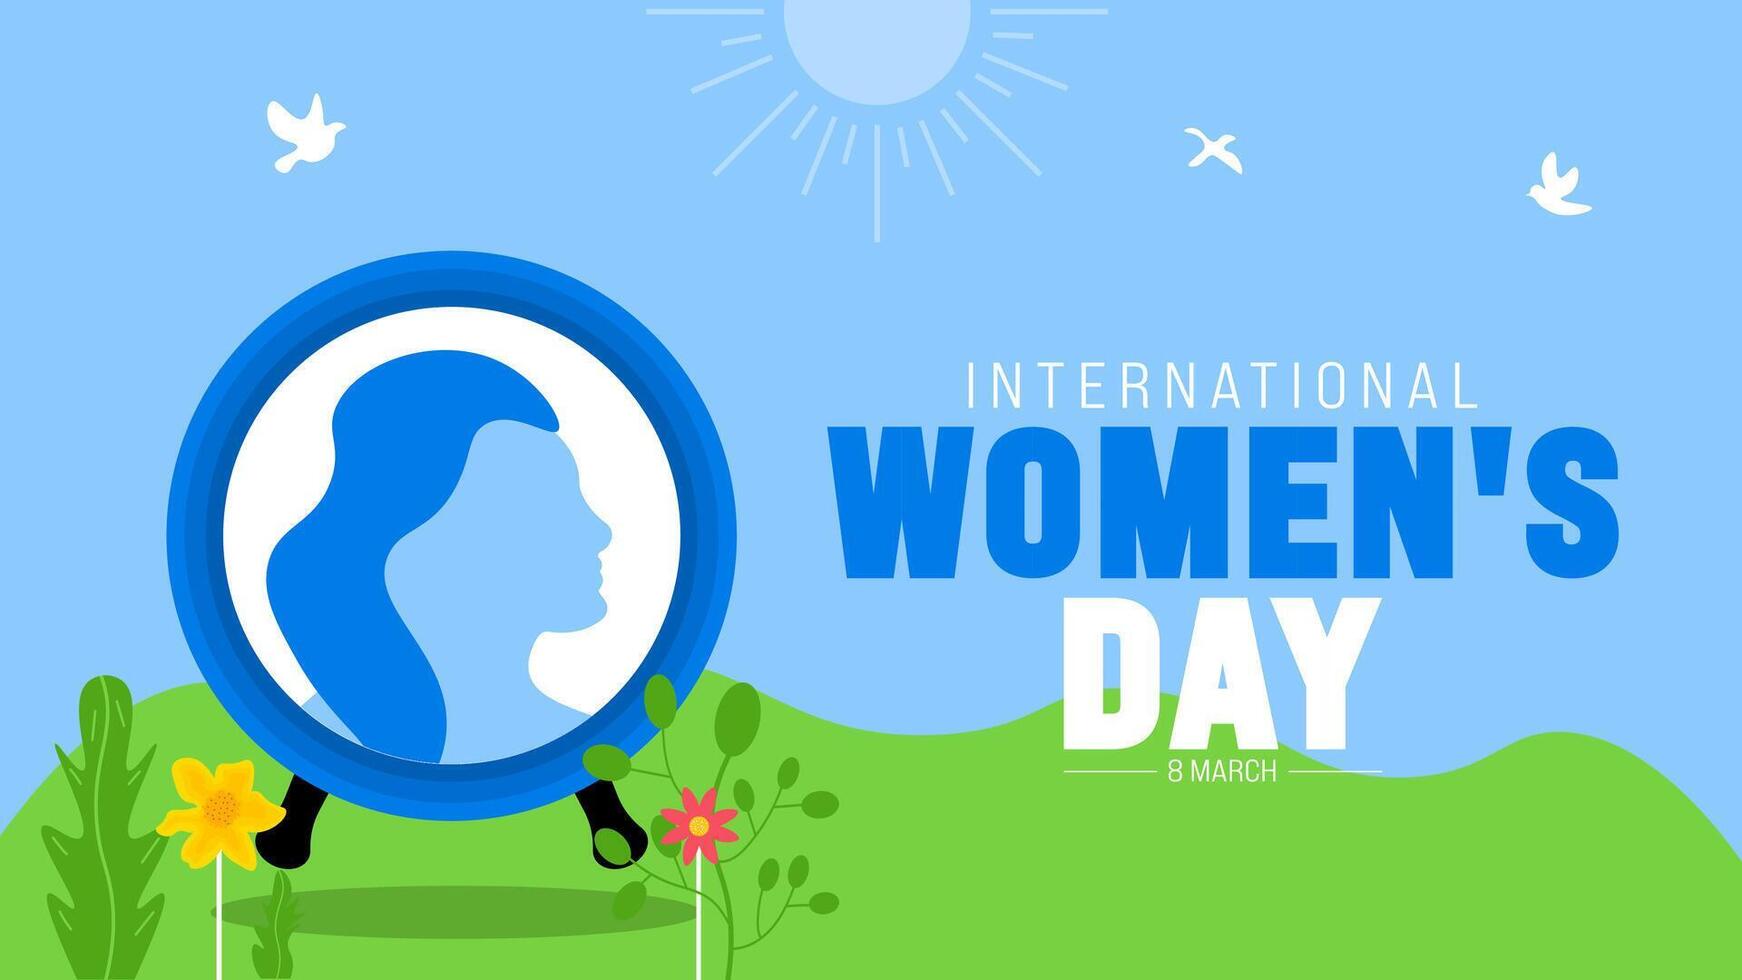 8 maart is Internationale vrouwen dag achtergrond met bloem ontwerp. gebruik naar achtergrond, banier, aanplakbiljet, kaart, en poster ontwerp sjabloon. vector illustratie.